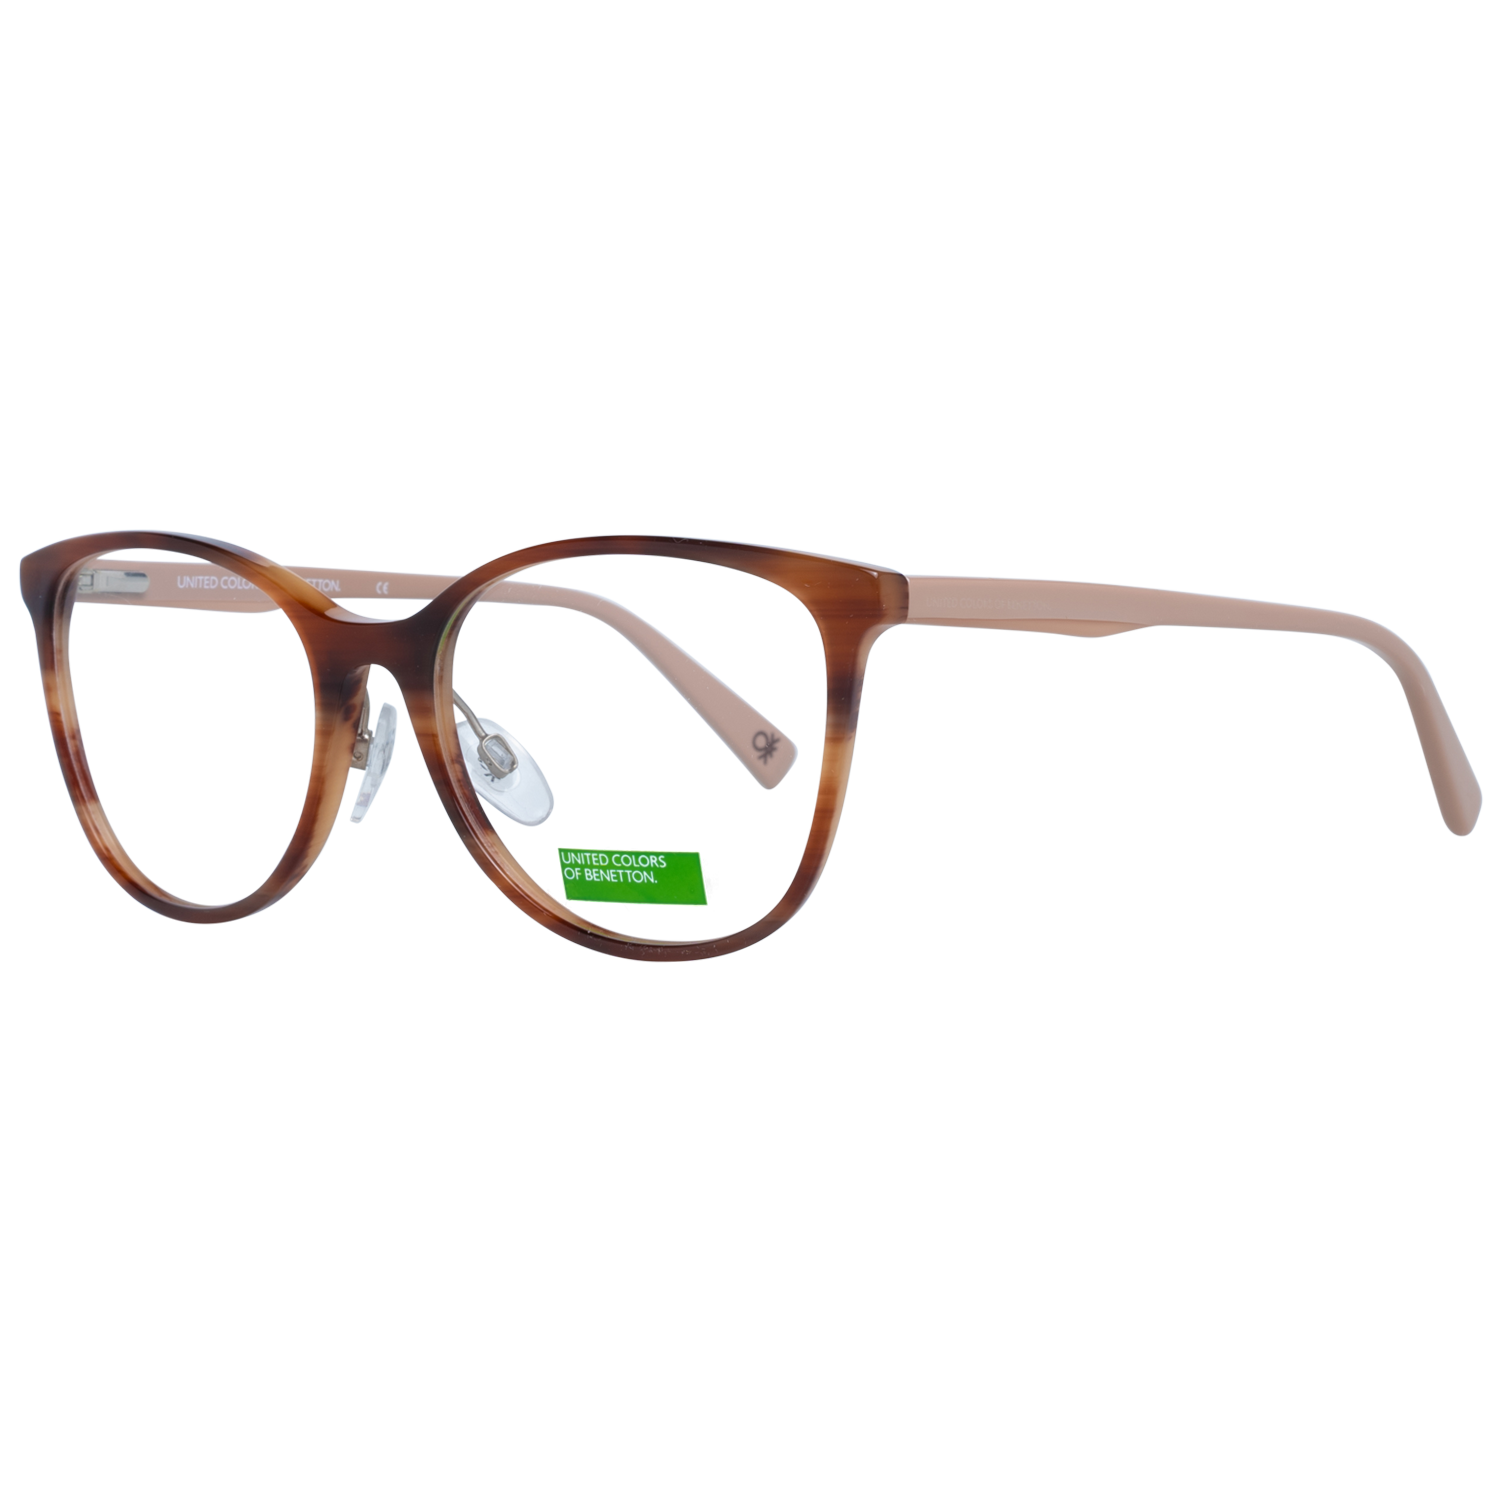 Benetton Frames Benetton Glasses Frames BEO1027 151 52 Eyeglasses Eyewear UK USA Australia 